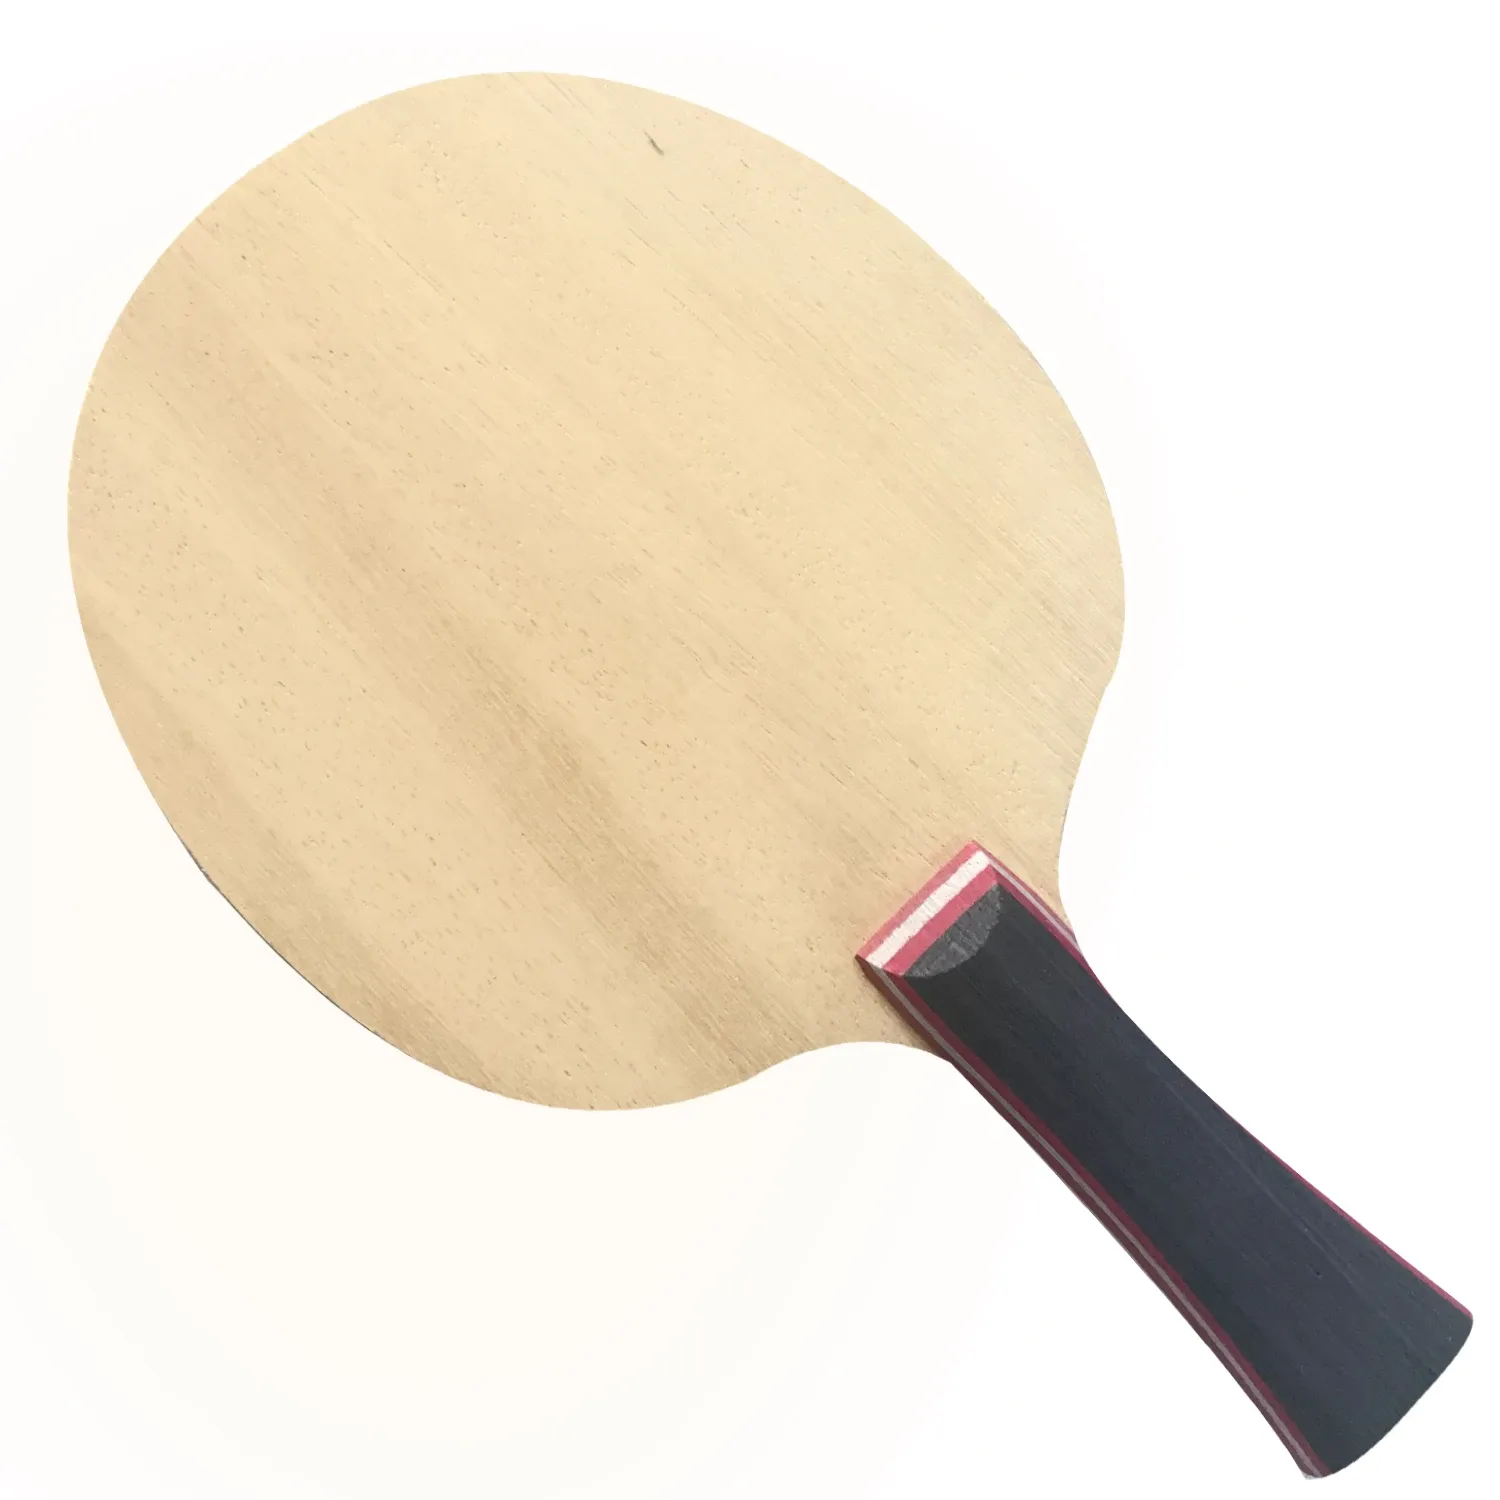 Origineel Sanwei Fextra 7 Table Tennis Blade (7 -laags hout) Noordse 7 Racket Ping Pong Bat Paddle